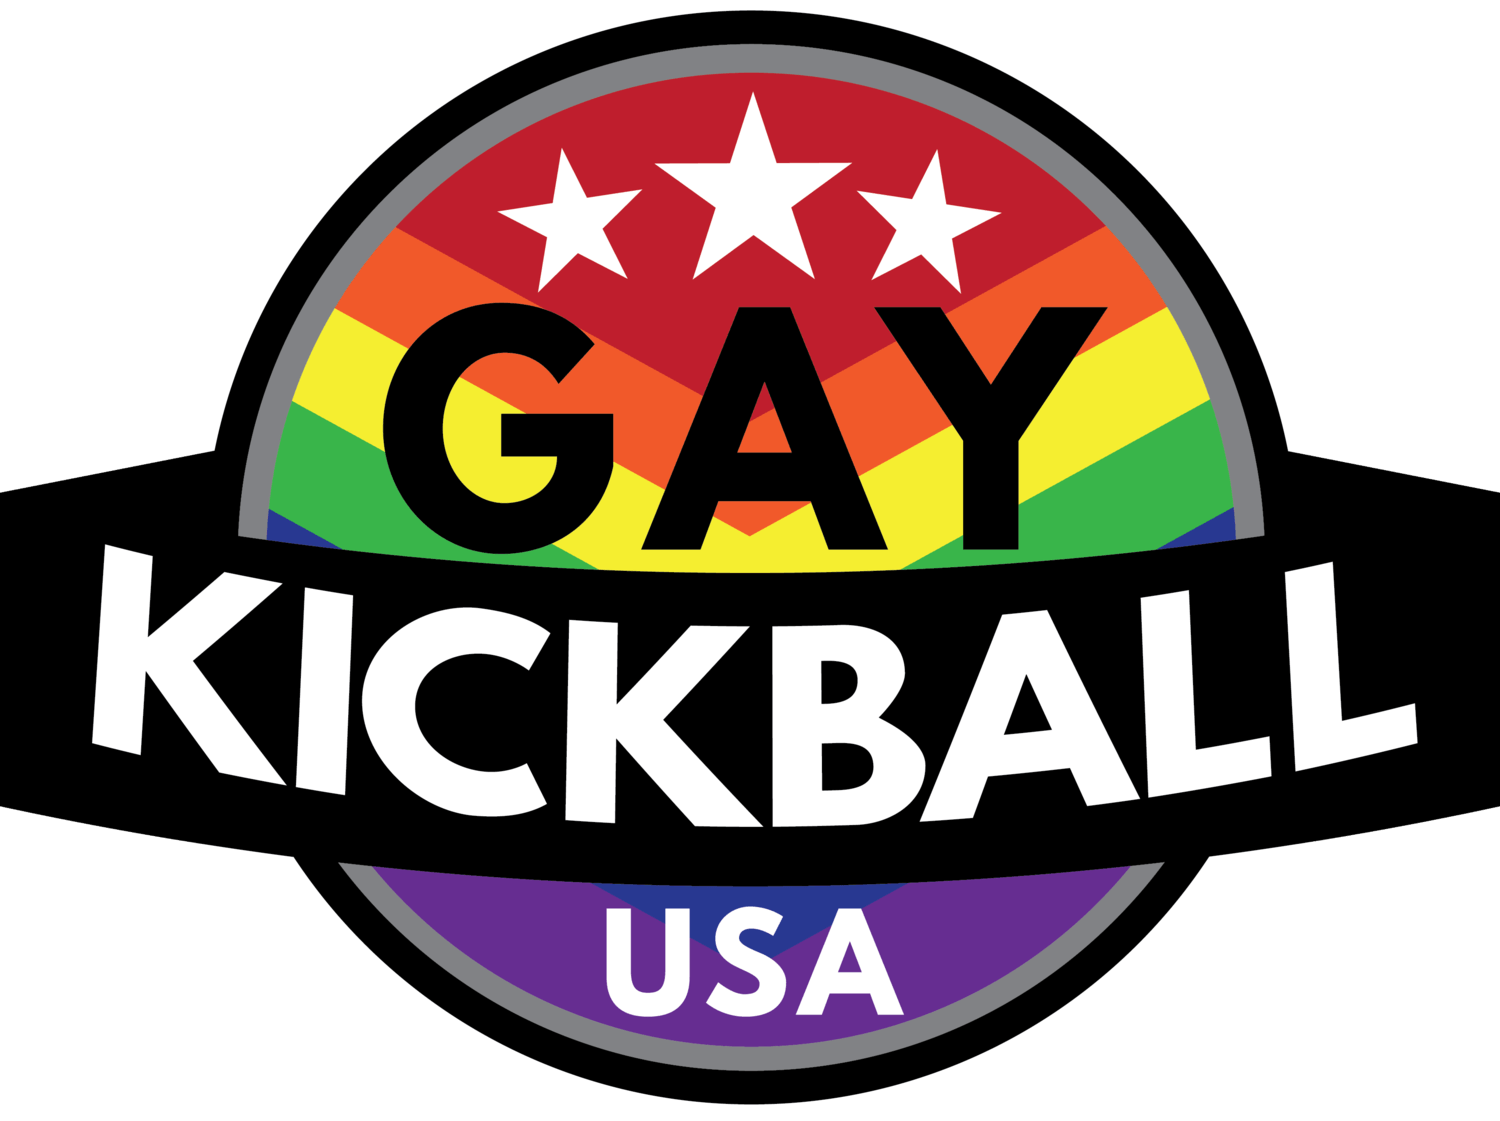 Kickball Logo - WHERE TO PLAY KICKBALL?